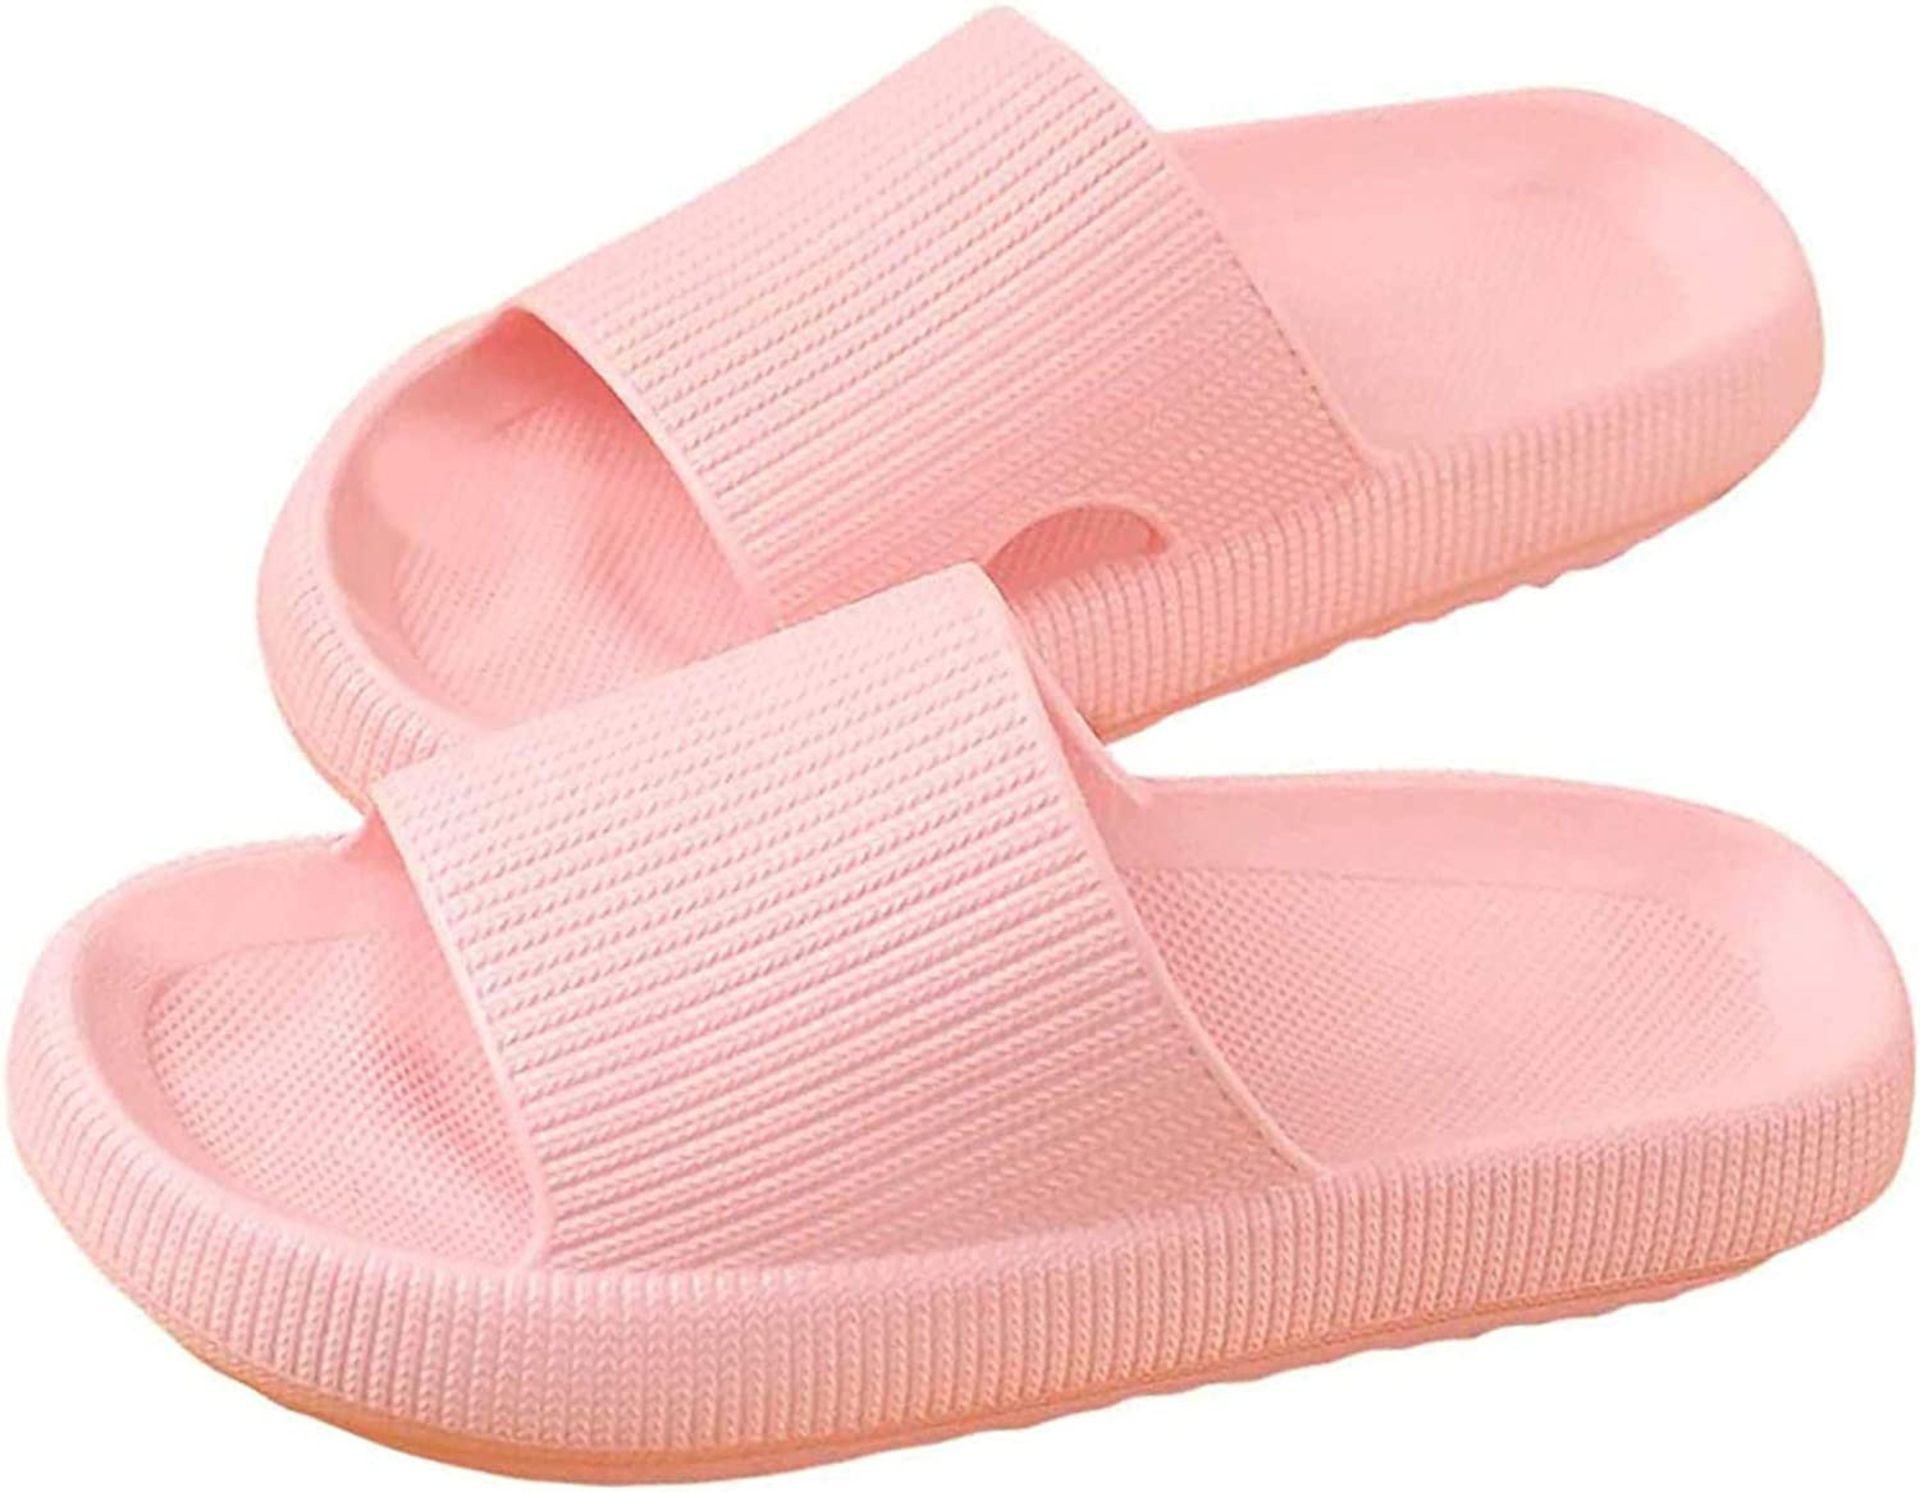 Pillow Slides Super Soft Home Slippers Non-Slip Quick Dry Shower Sandal Comfortable, 9 UK